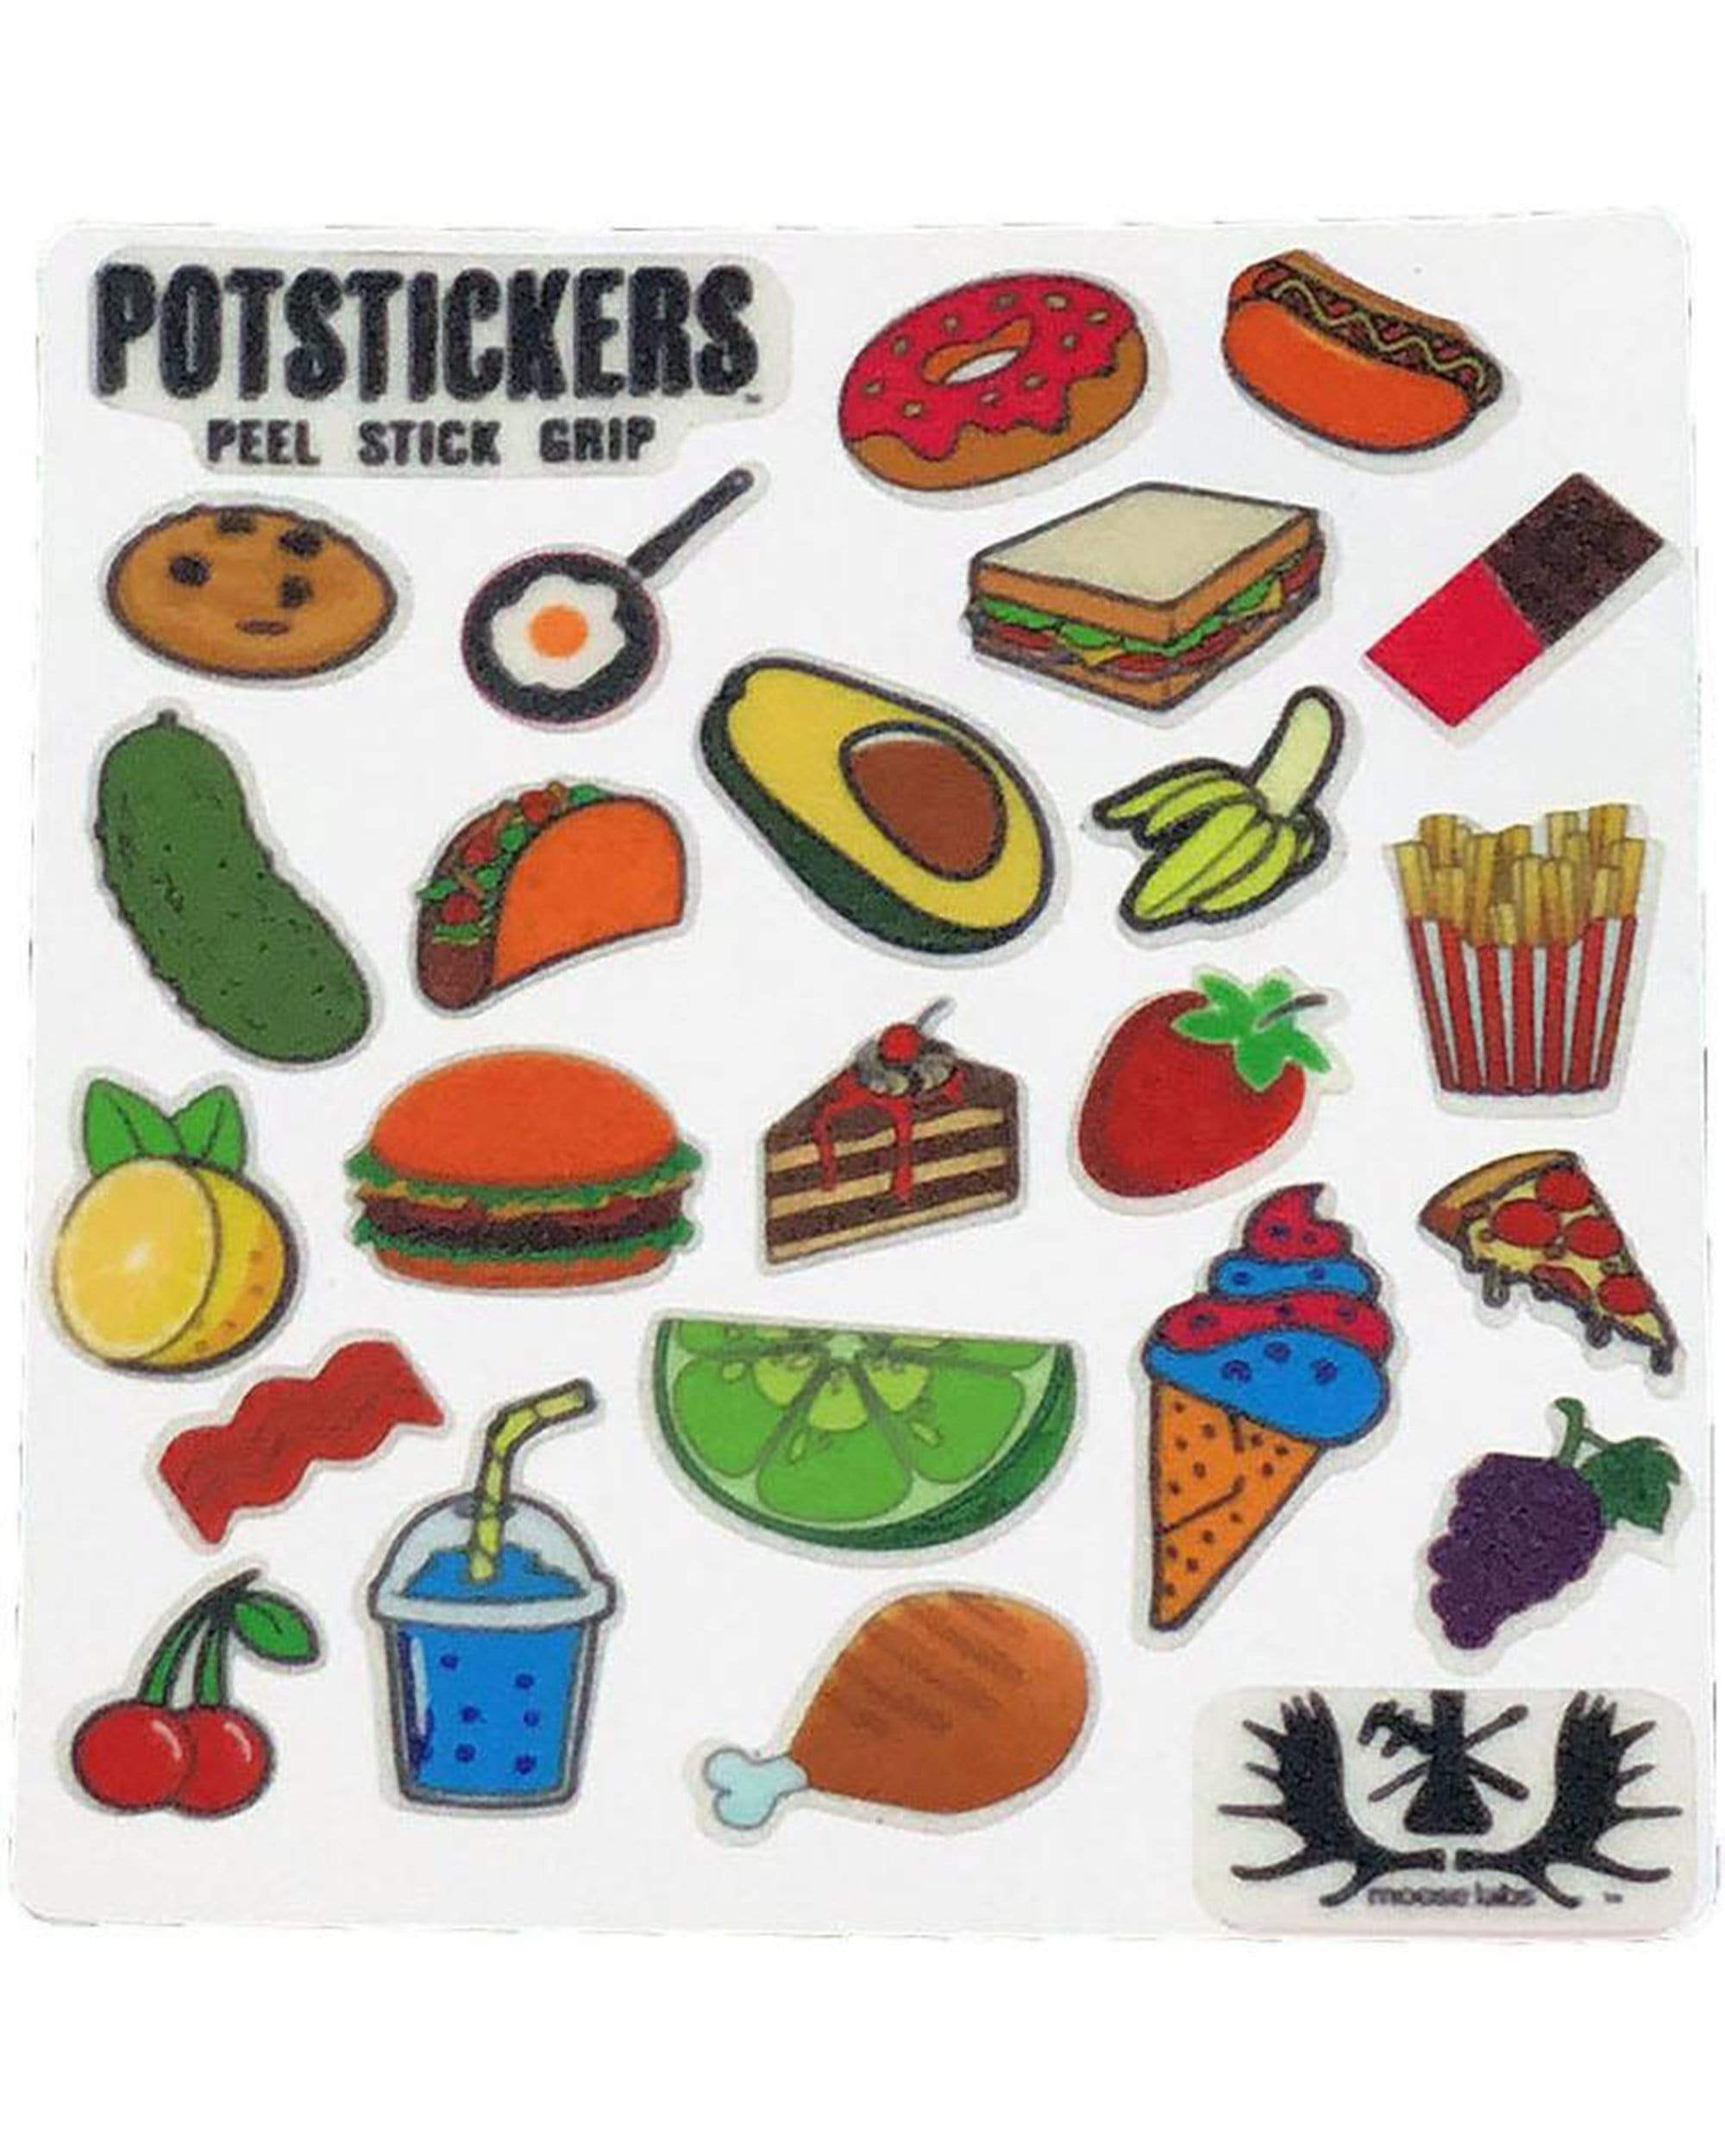 PotStickers